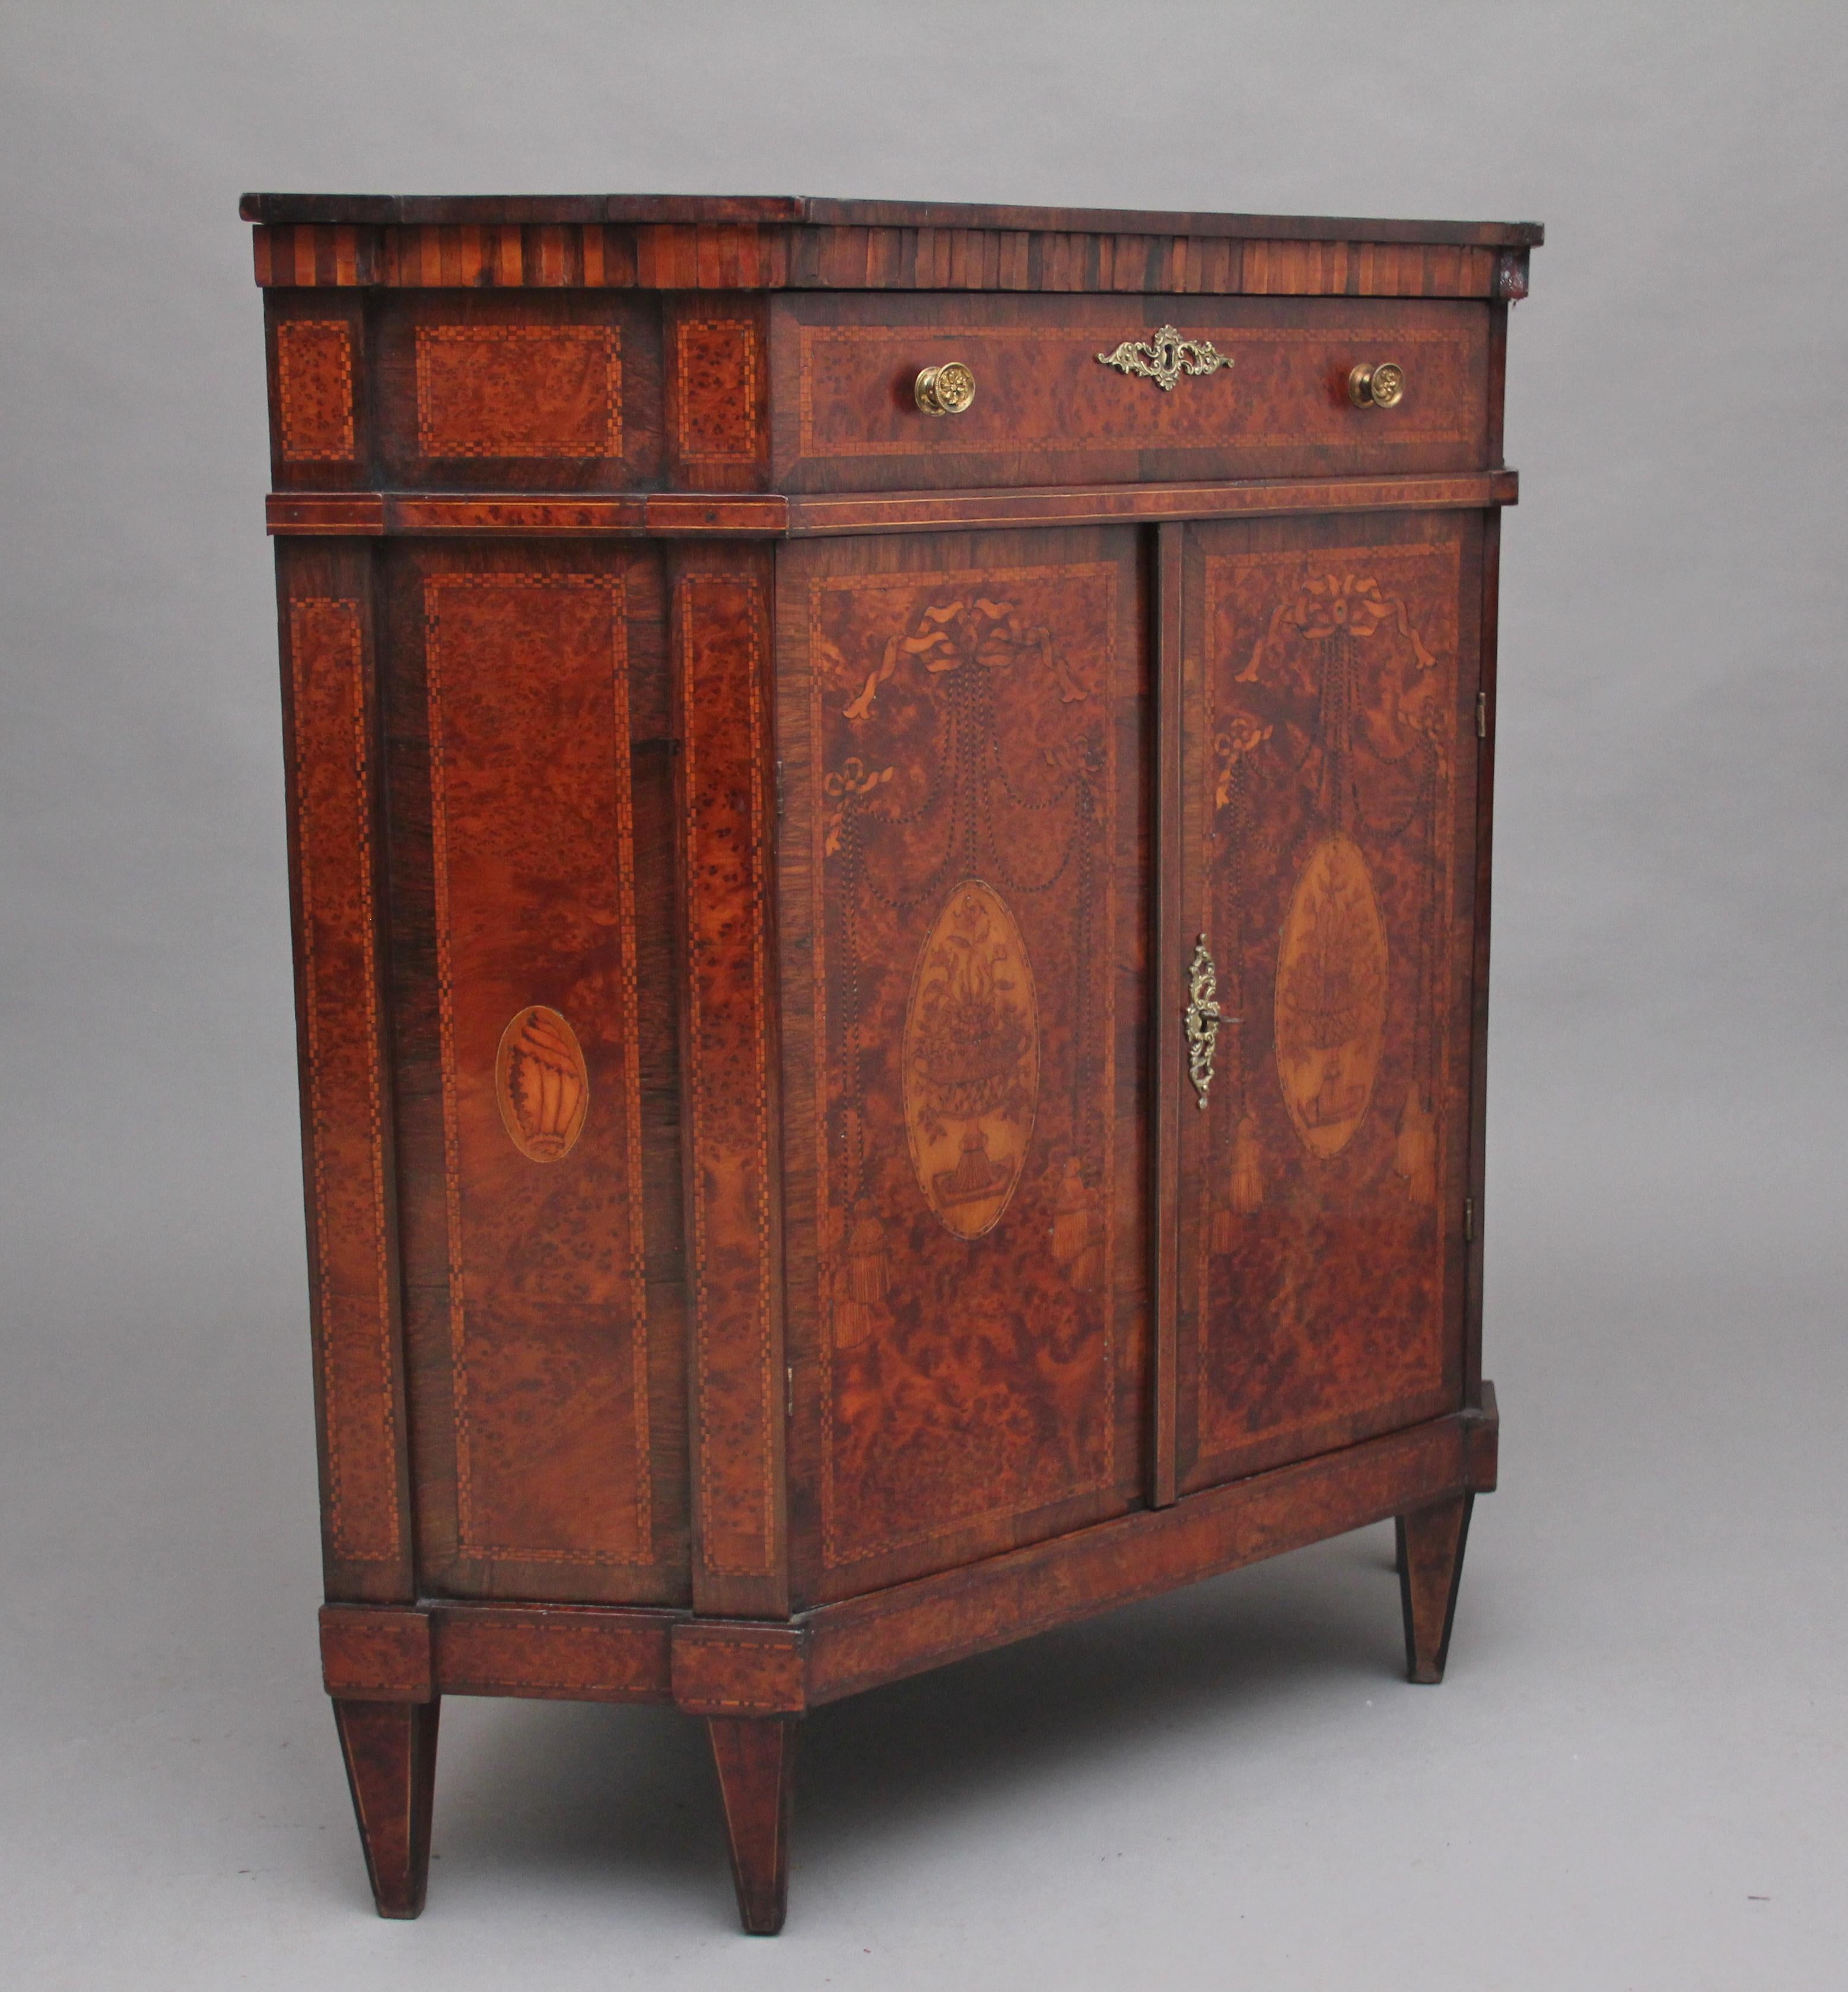 British 19th Century Burr Yew Wood and Inlaid Corner Cabinet